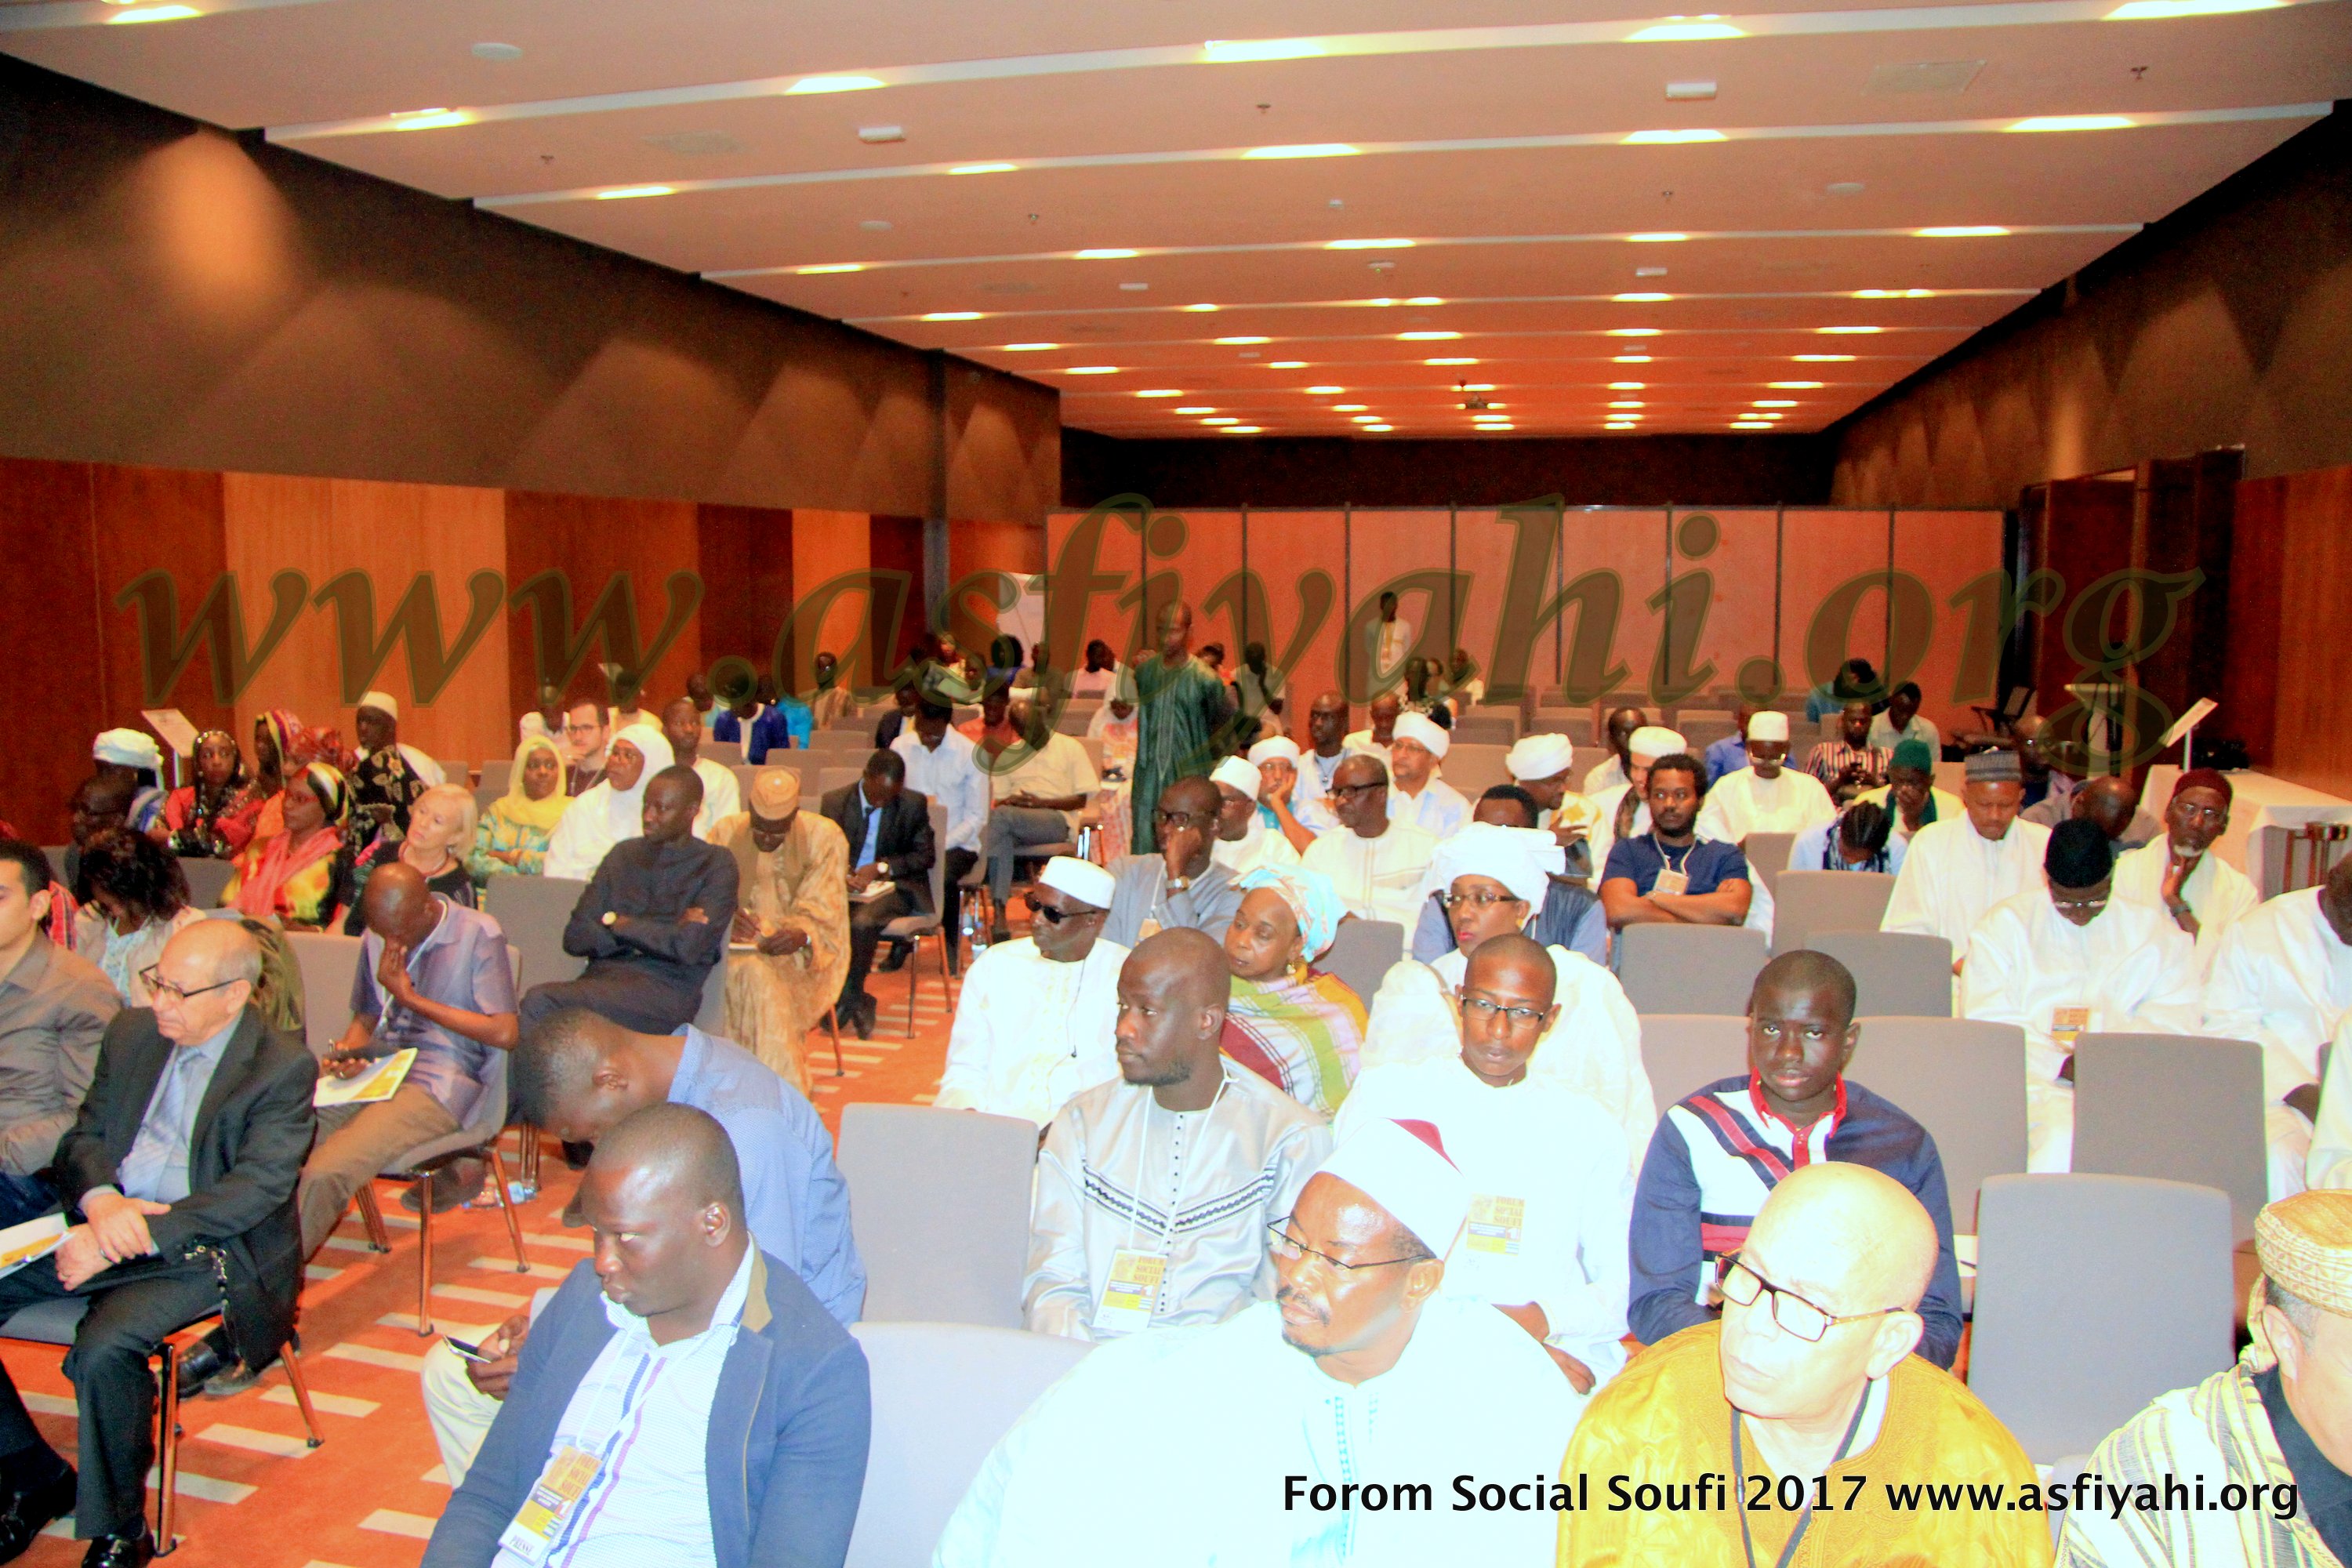 PHOTOS - Les images du Forum Social Soufi édition 2017, organisé à Dakar par le Mouvement Cercle Souffles 